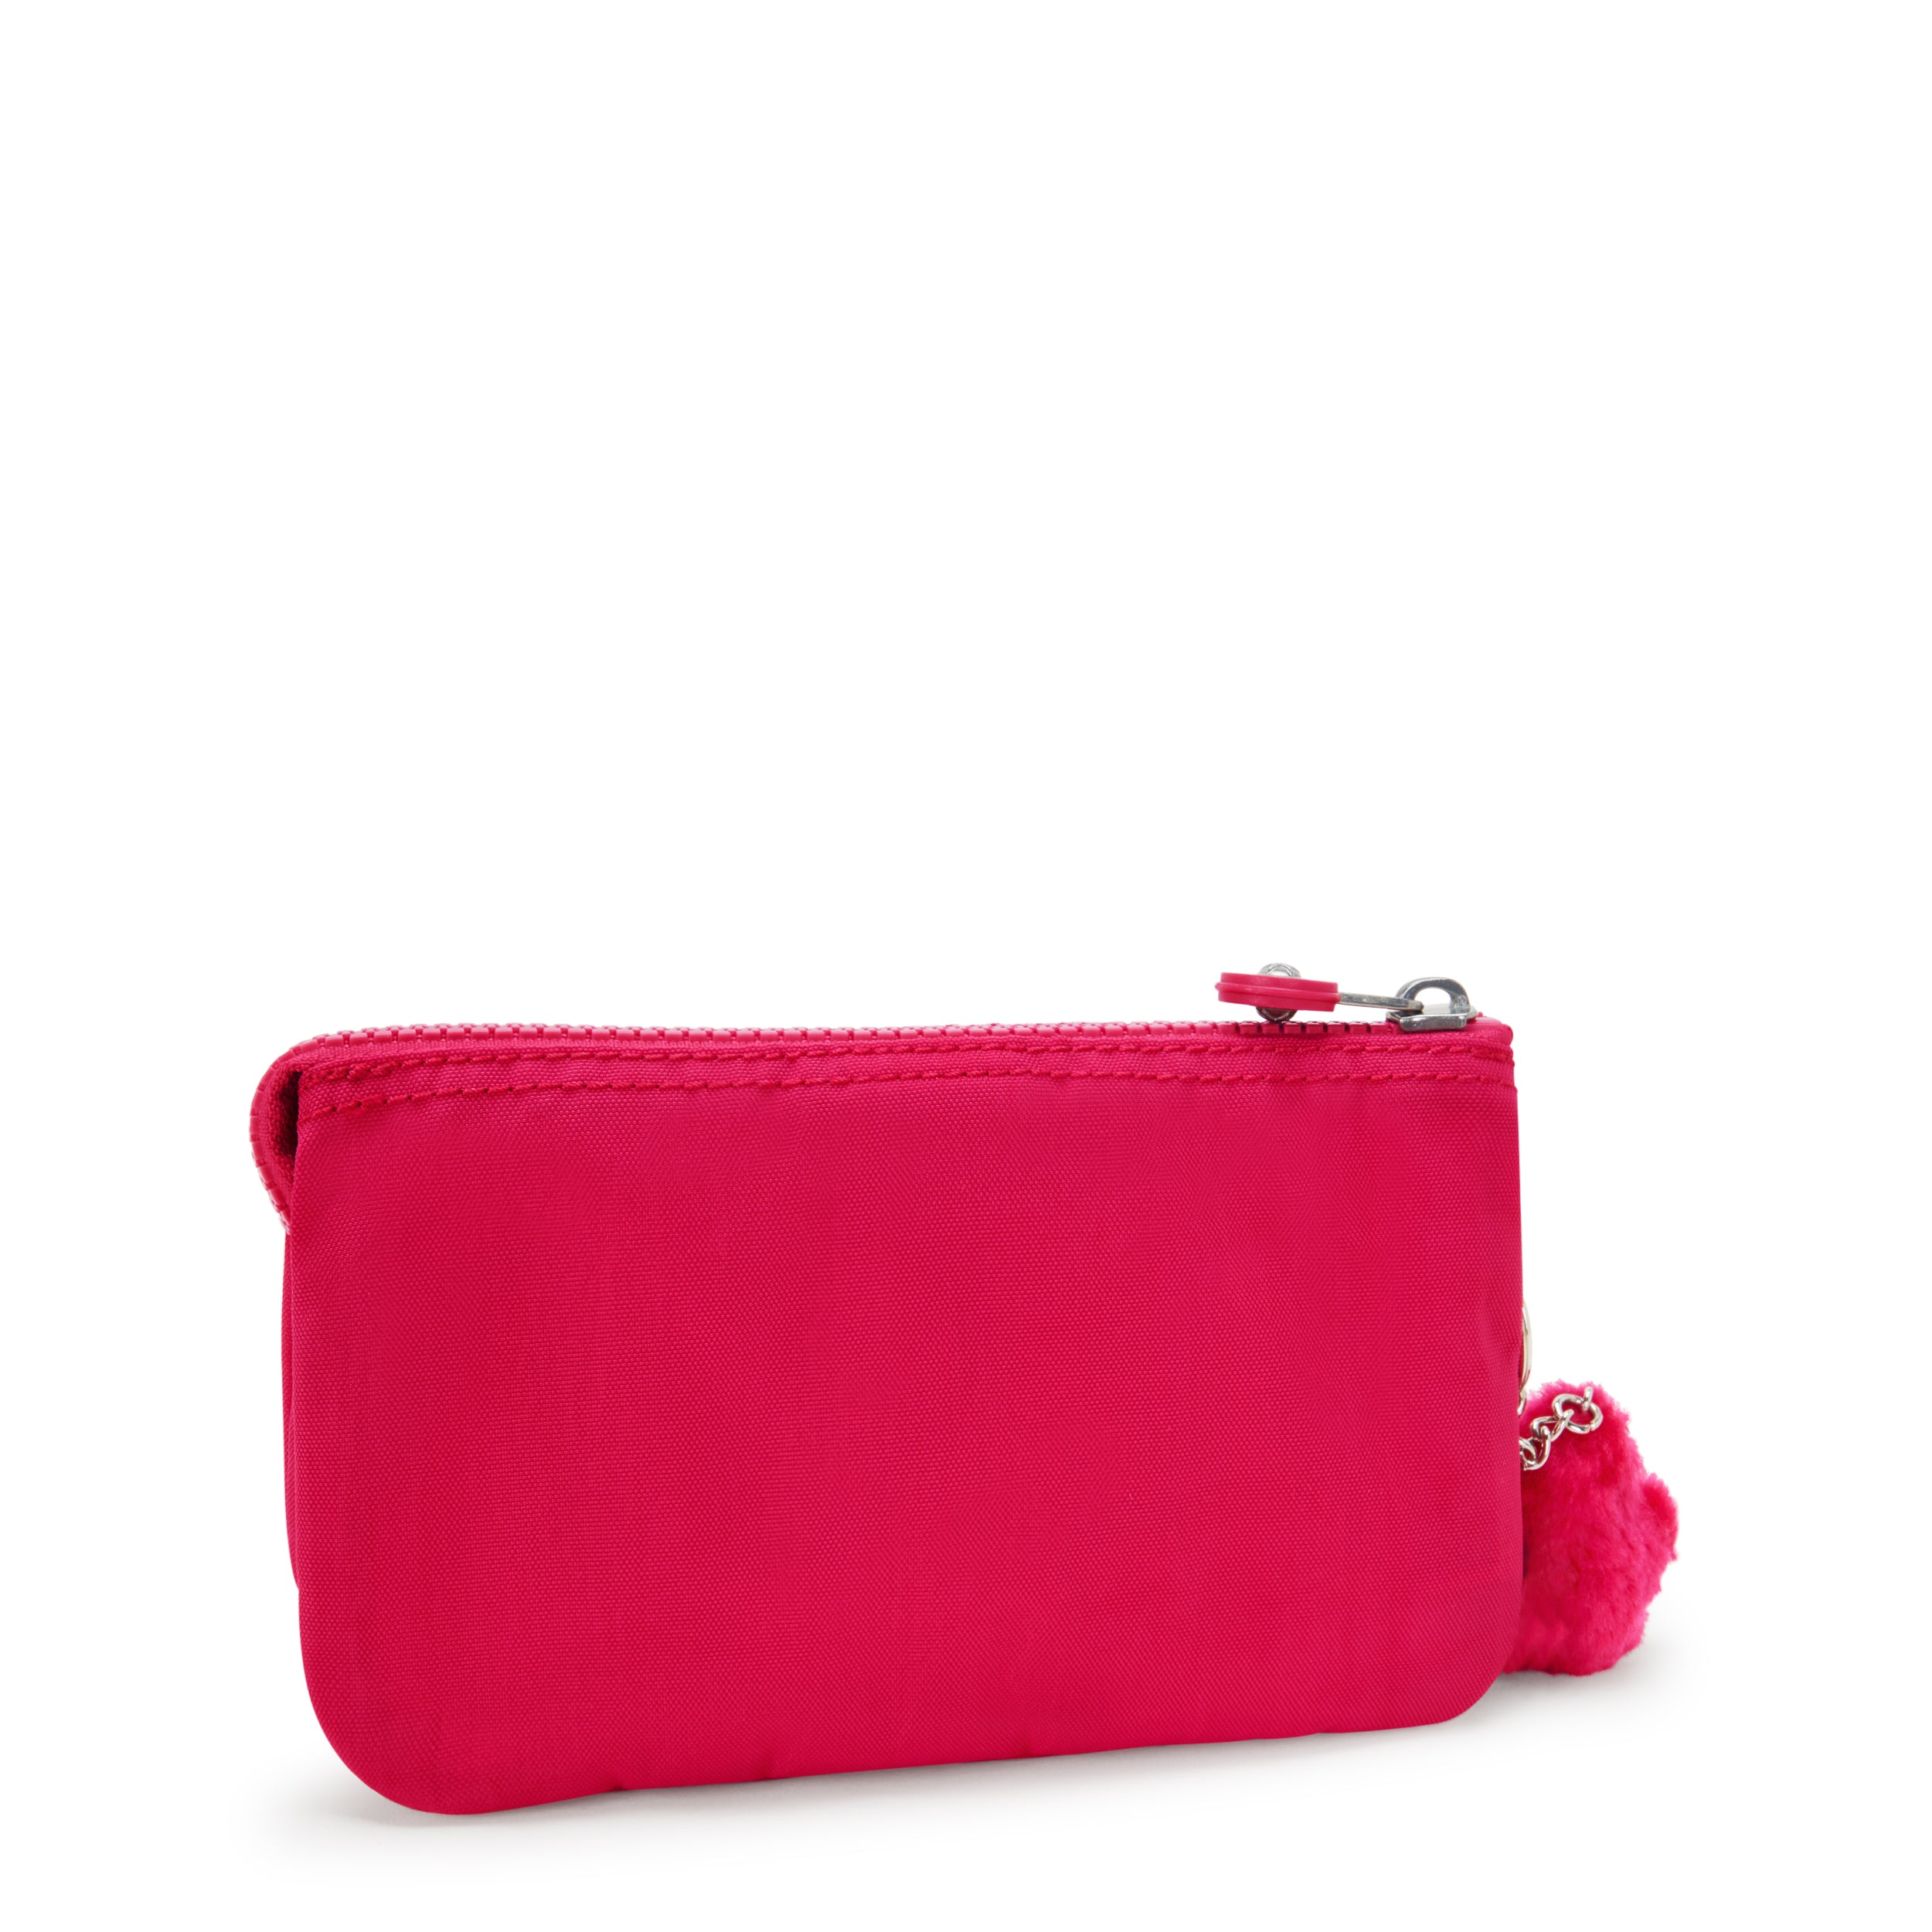 KIPLING-Creativity L-Large purse-Confetti Pink-13265-T73